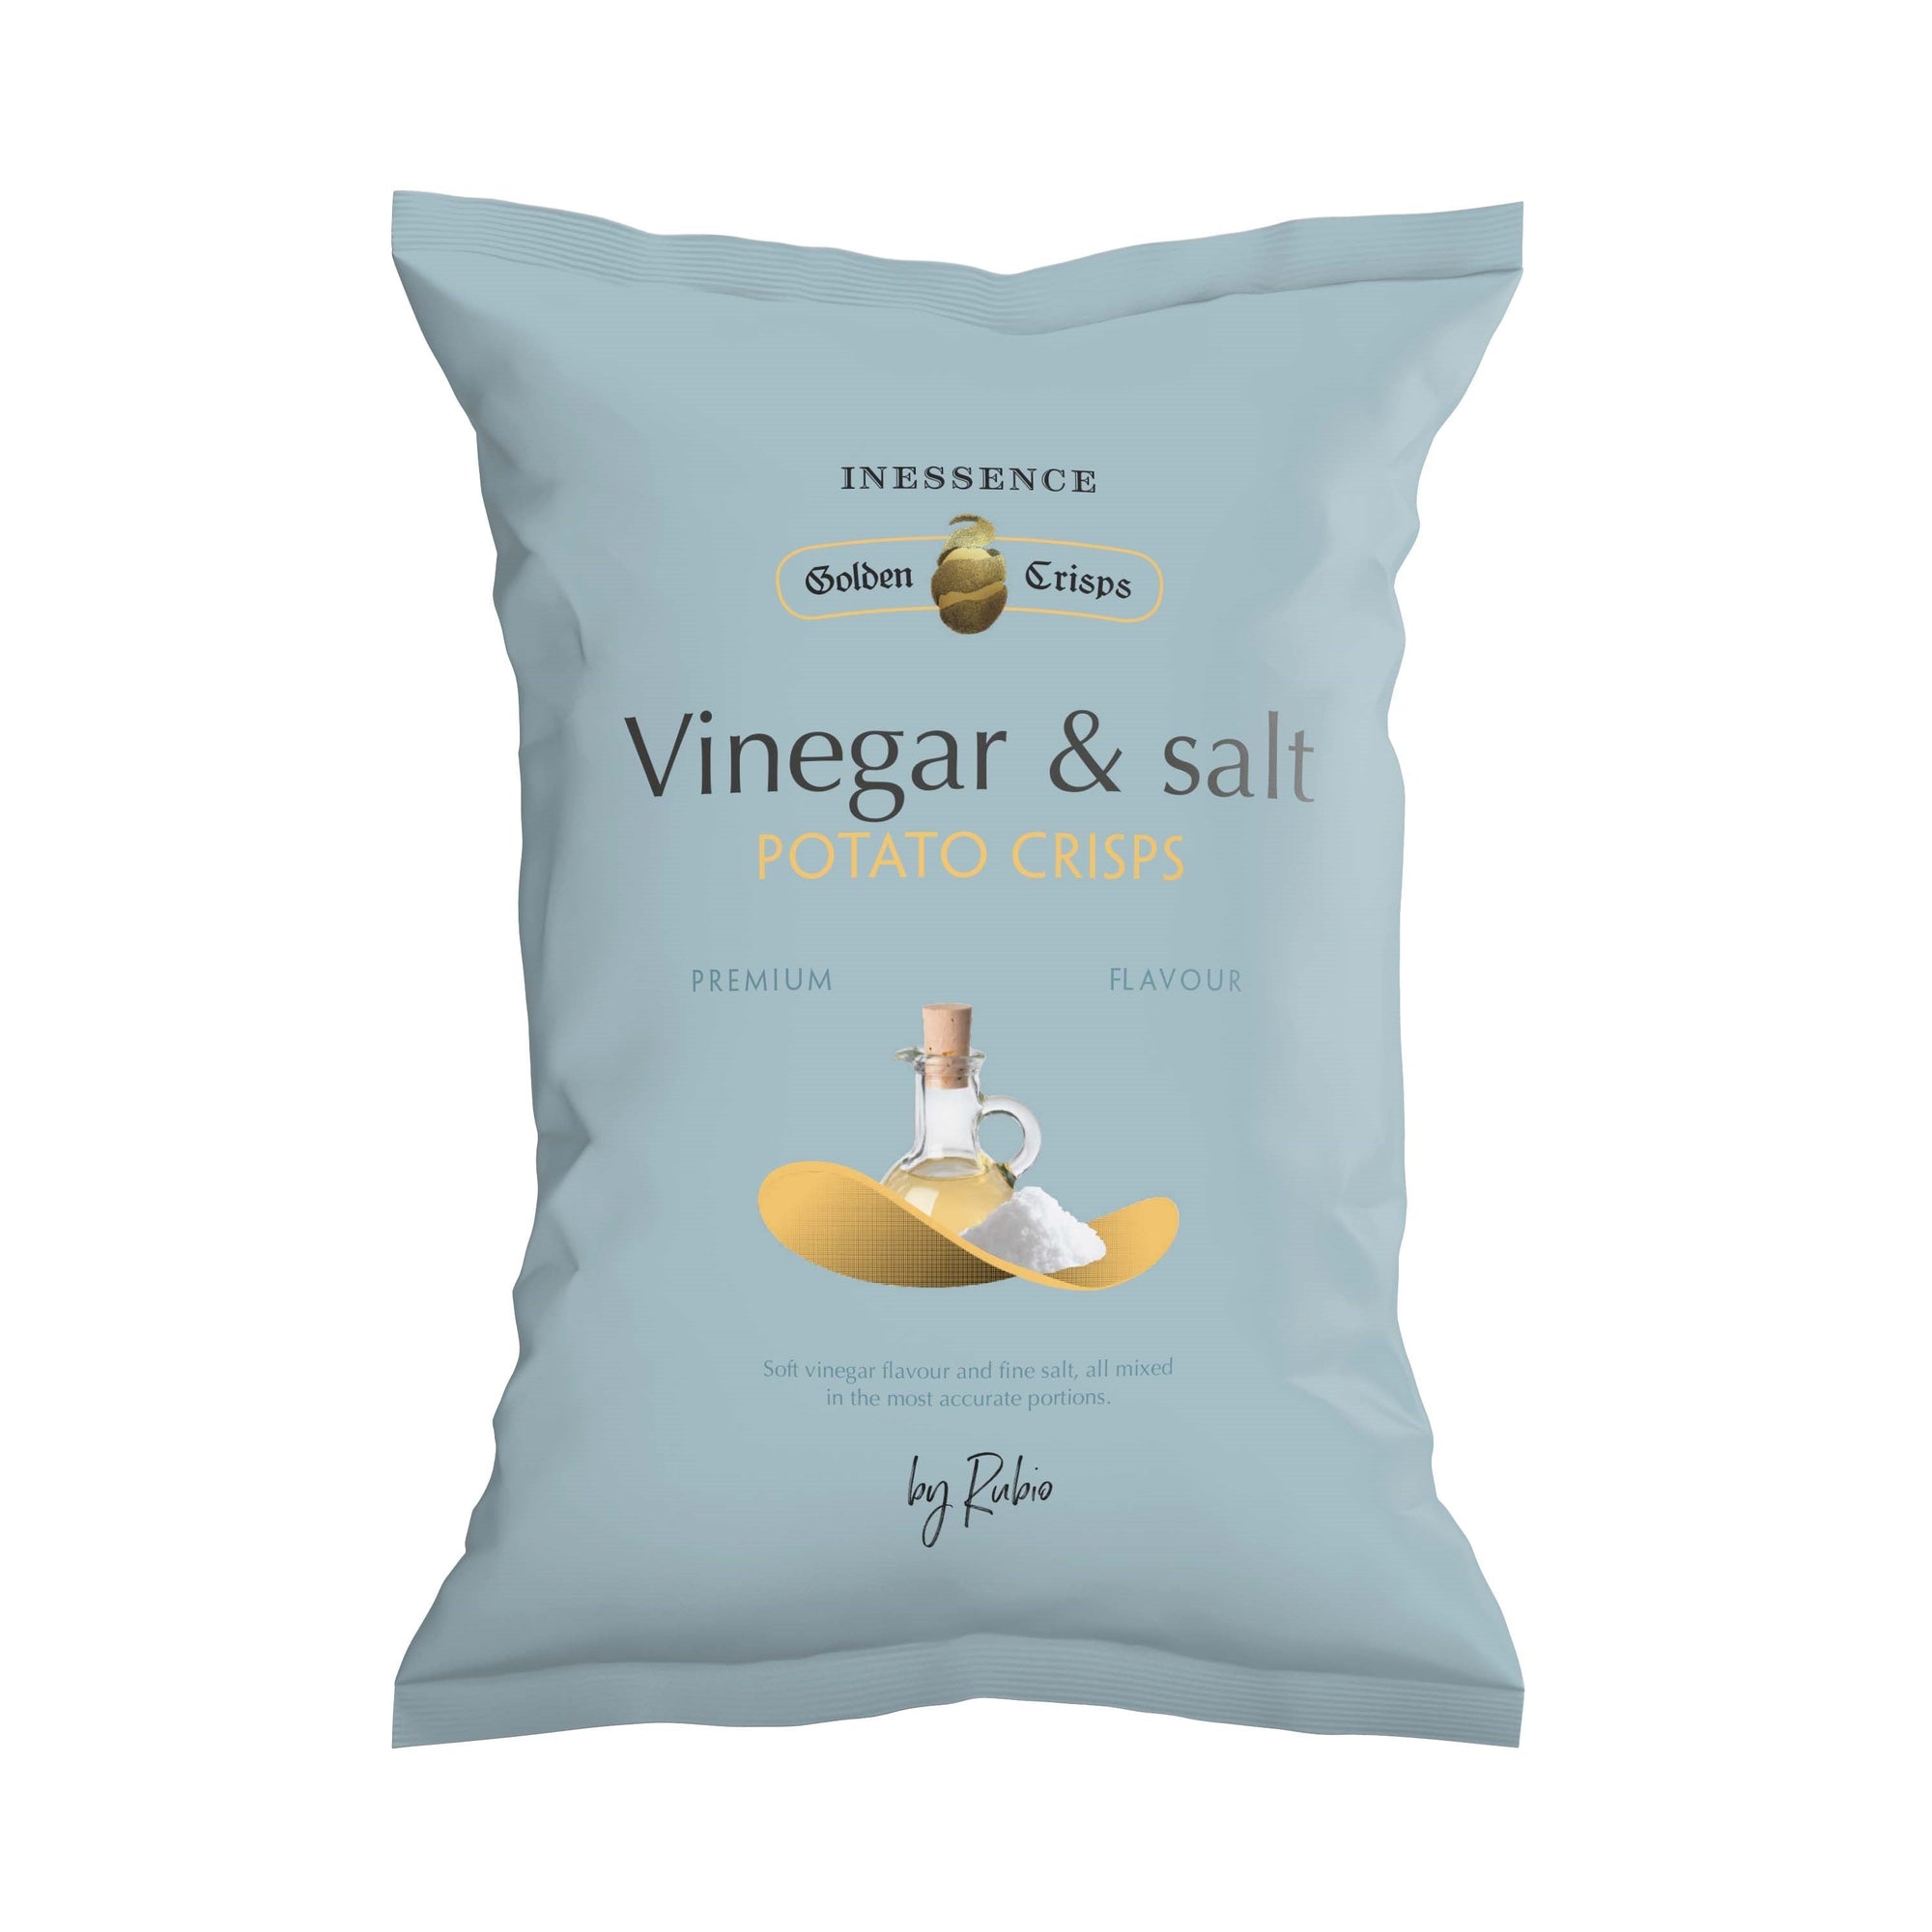 Inessence Vinegar & Salt Potato Chips (125g)